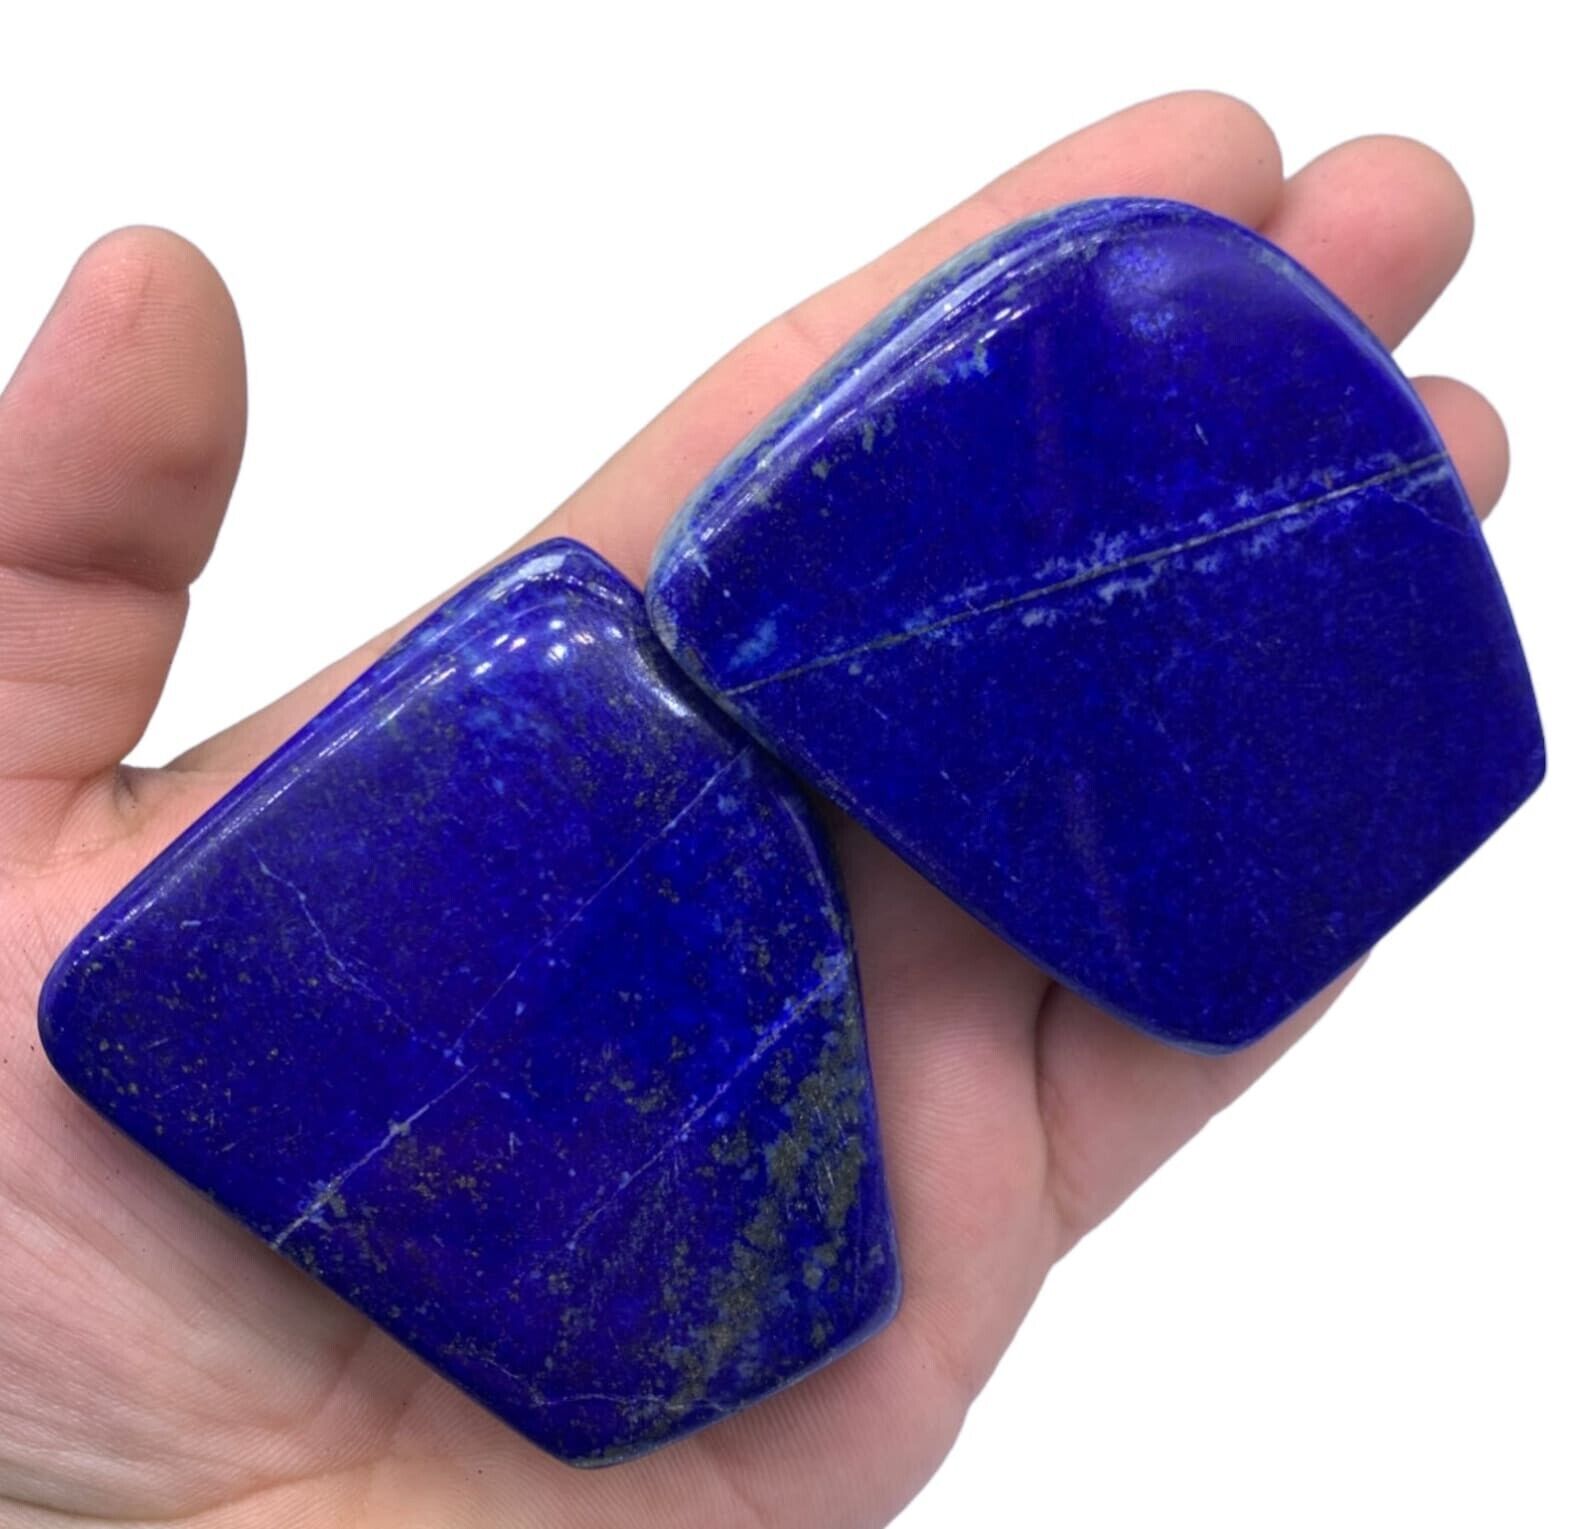 2 Pieces Best Qualit Lapis Lazuli Free Form, Lapis Lazuil Free Form